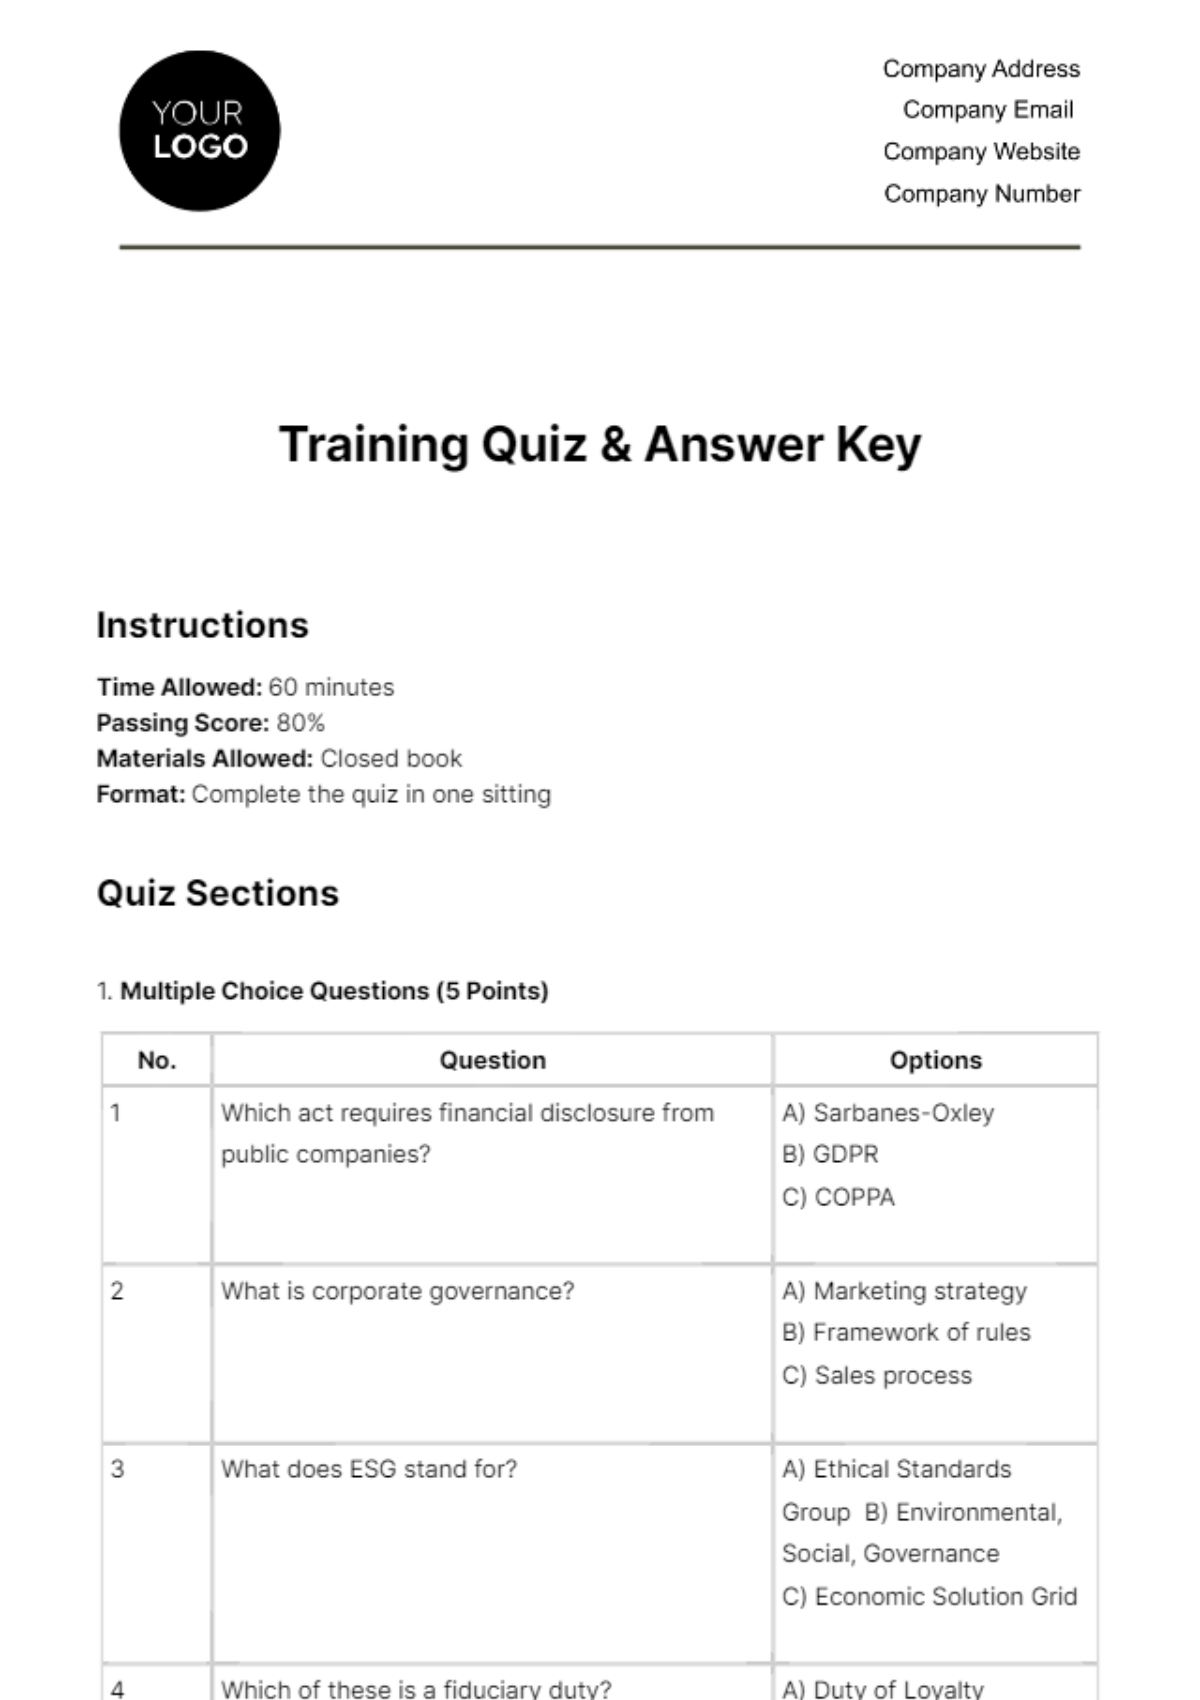 Training Quiz & Answer Key HR Template